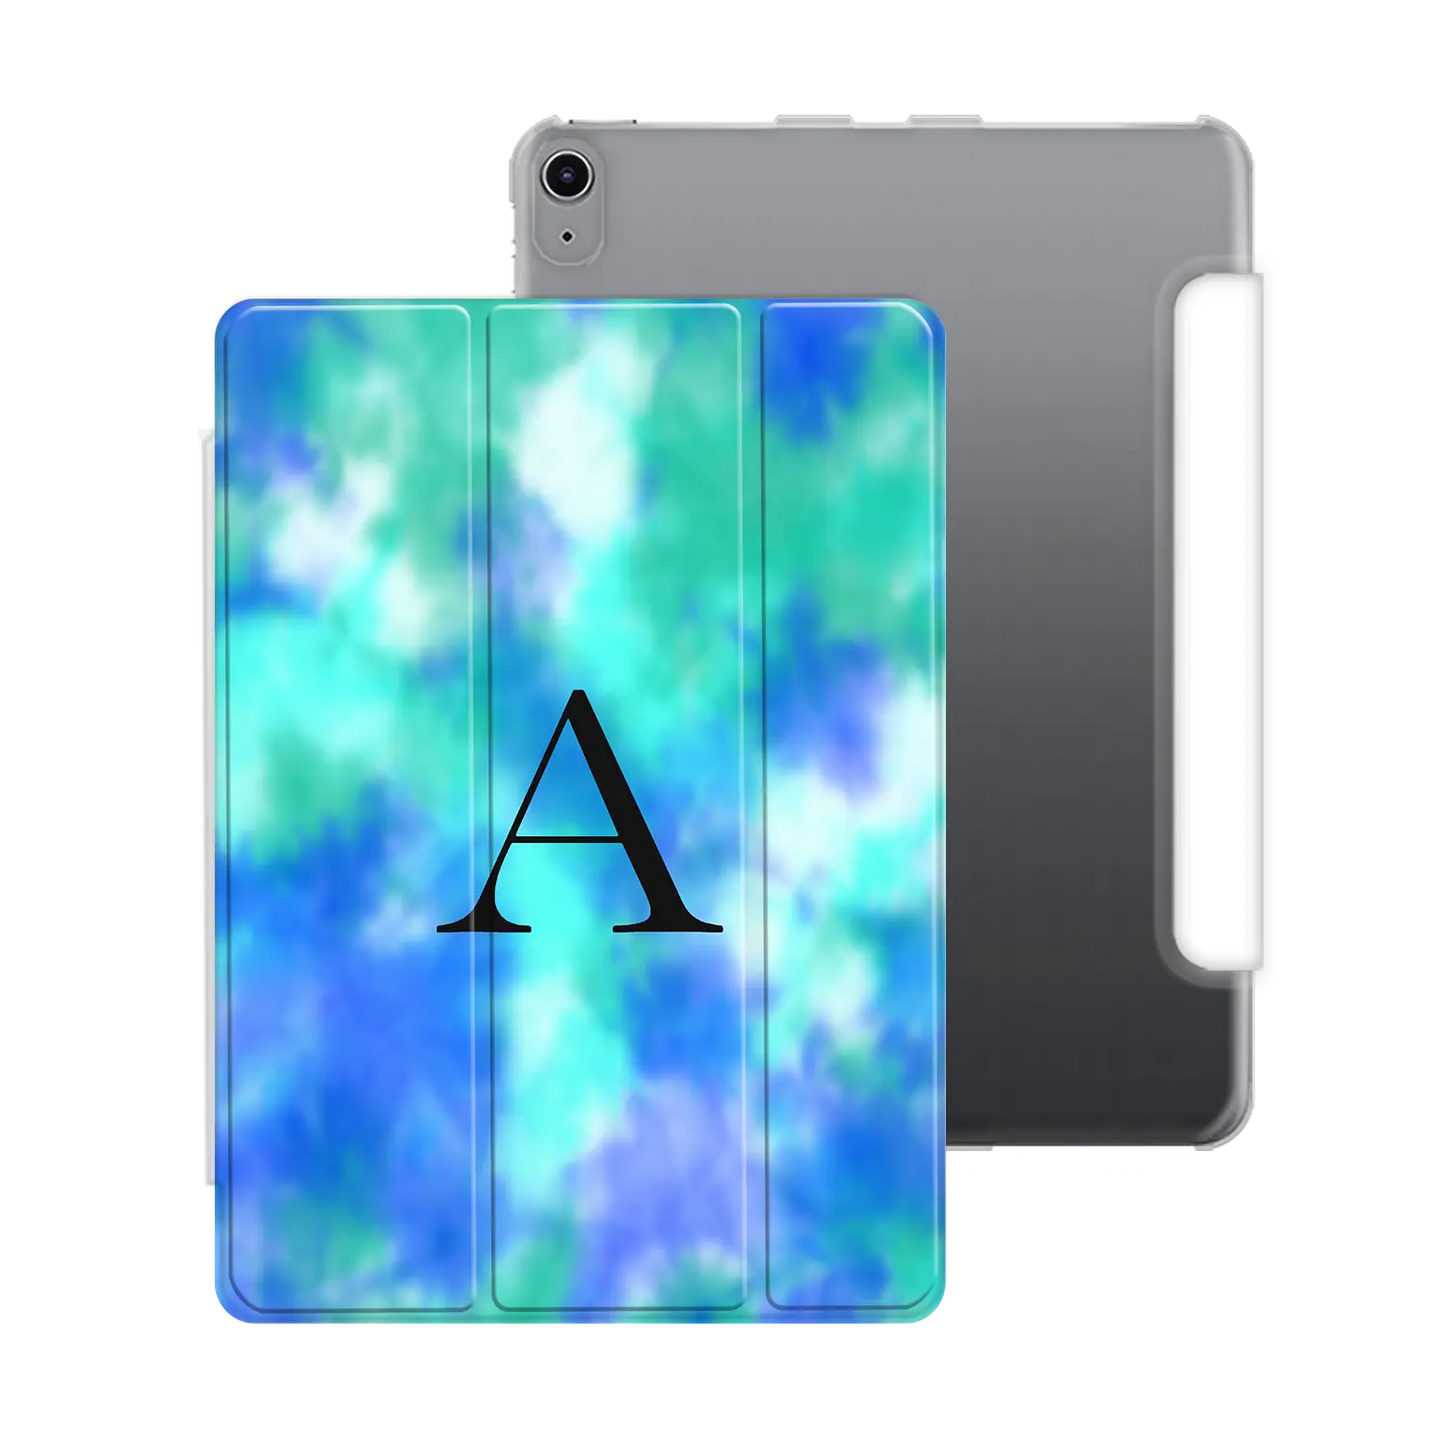 Tie Dye - iPad personalizado carcasa